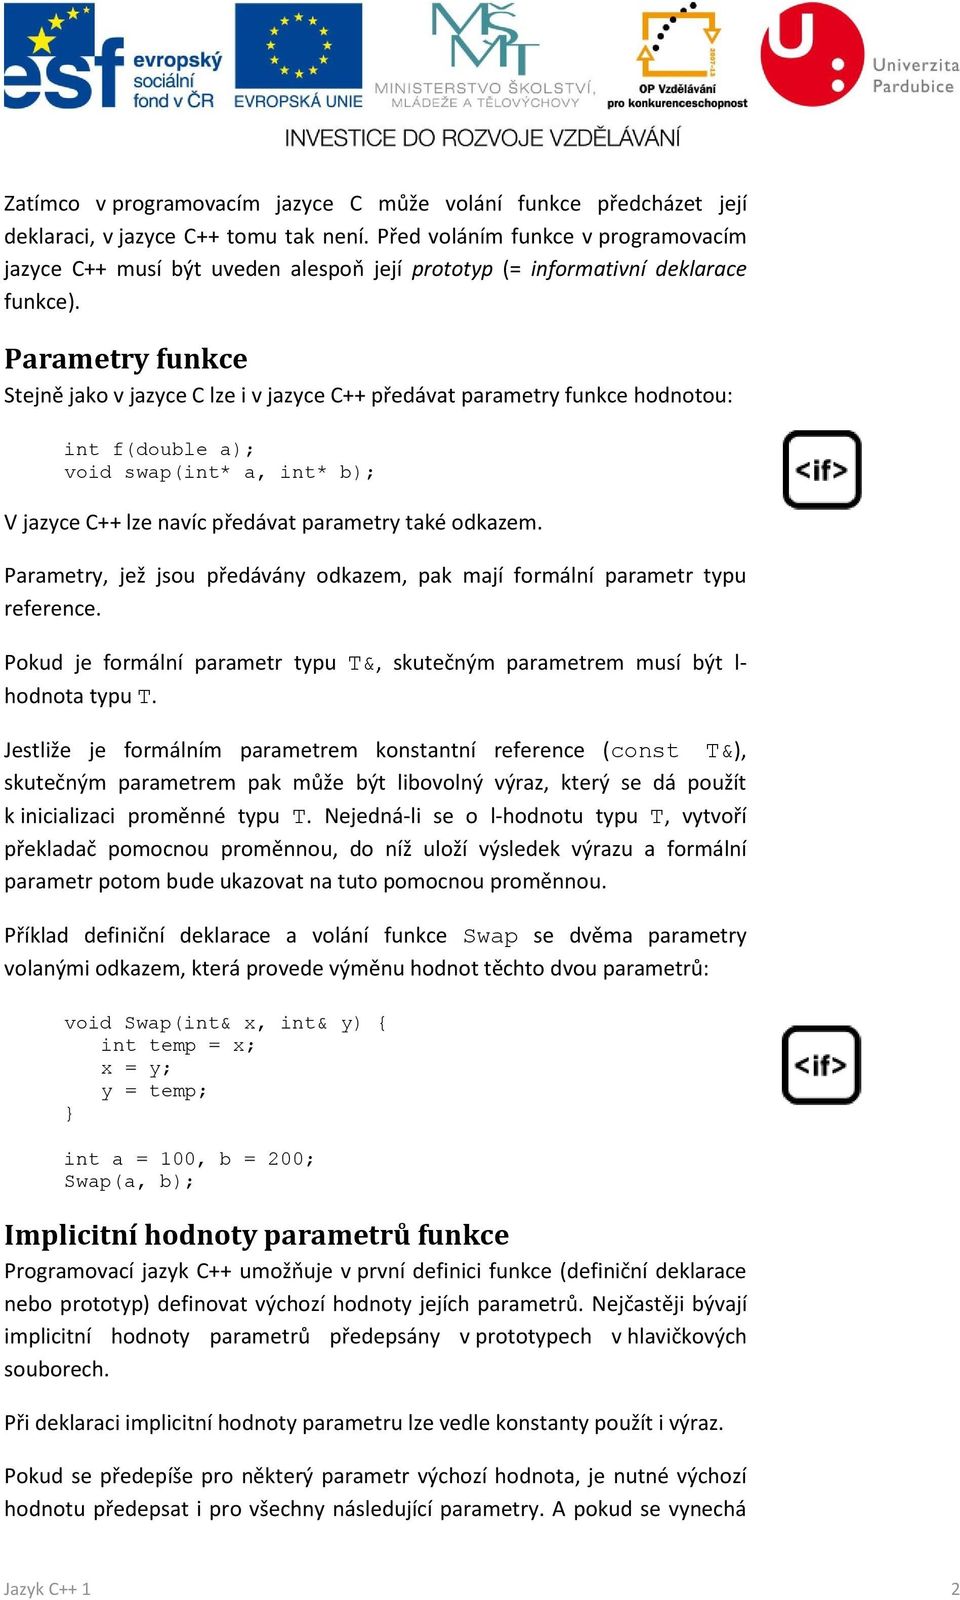 Parametry funkce Stejně jako v jazyce C lze i v jazyce C++ předávat parametry funkce hodnotou: int f(double a); void swap(int* a, int* b); V jazyce C++ lze navíc předávat parametry také odkazem.